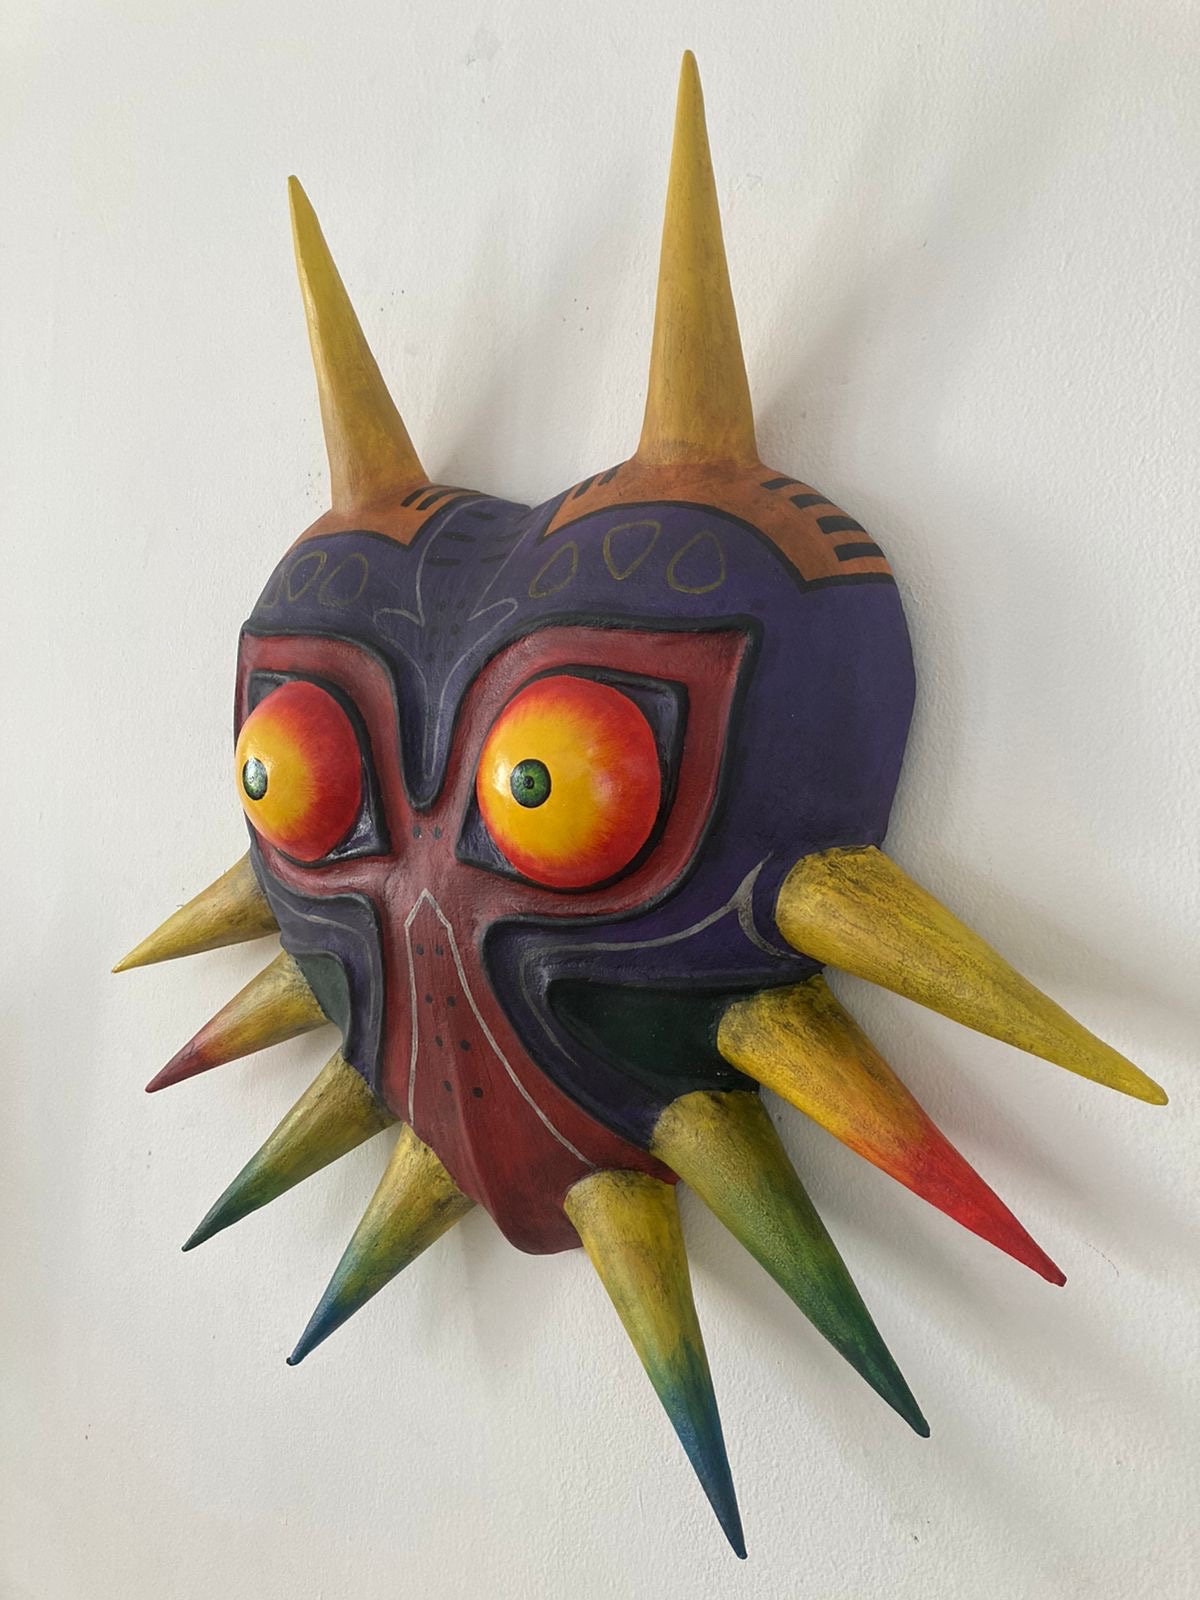 The Legend of Zelda: Majora's Mask: esta máscara única tiene un significado especial debido a su intrincado diseño y el arte involucrado.